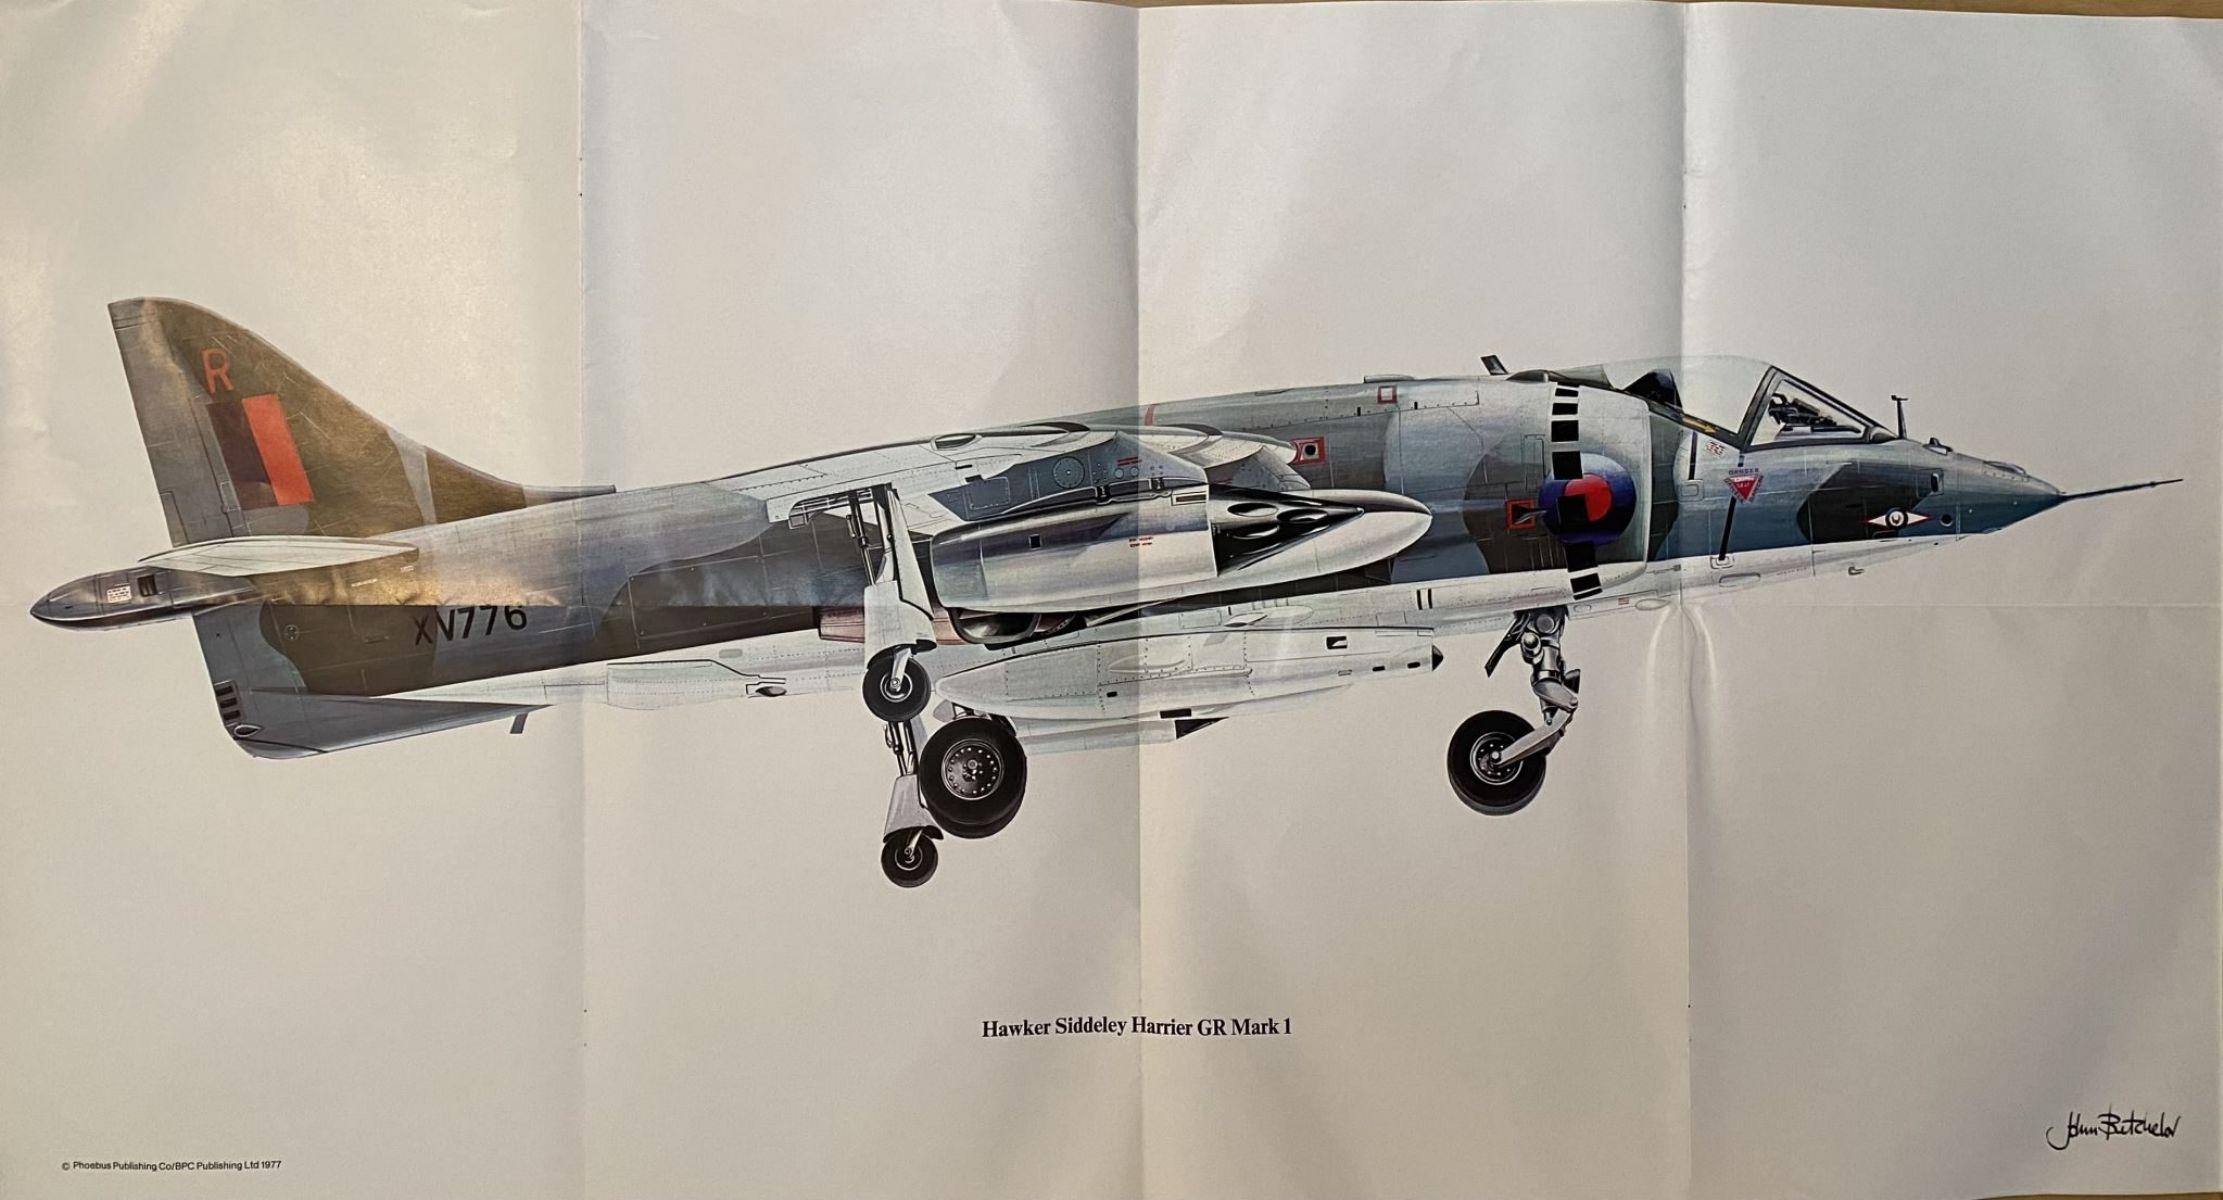 VINTAGE POSTER: Hawker Siddeley Harrier GR Mark 1